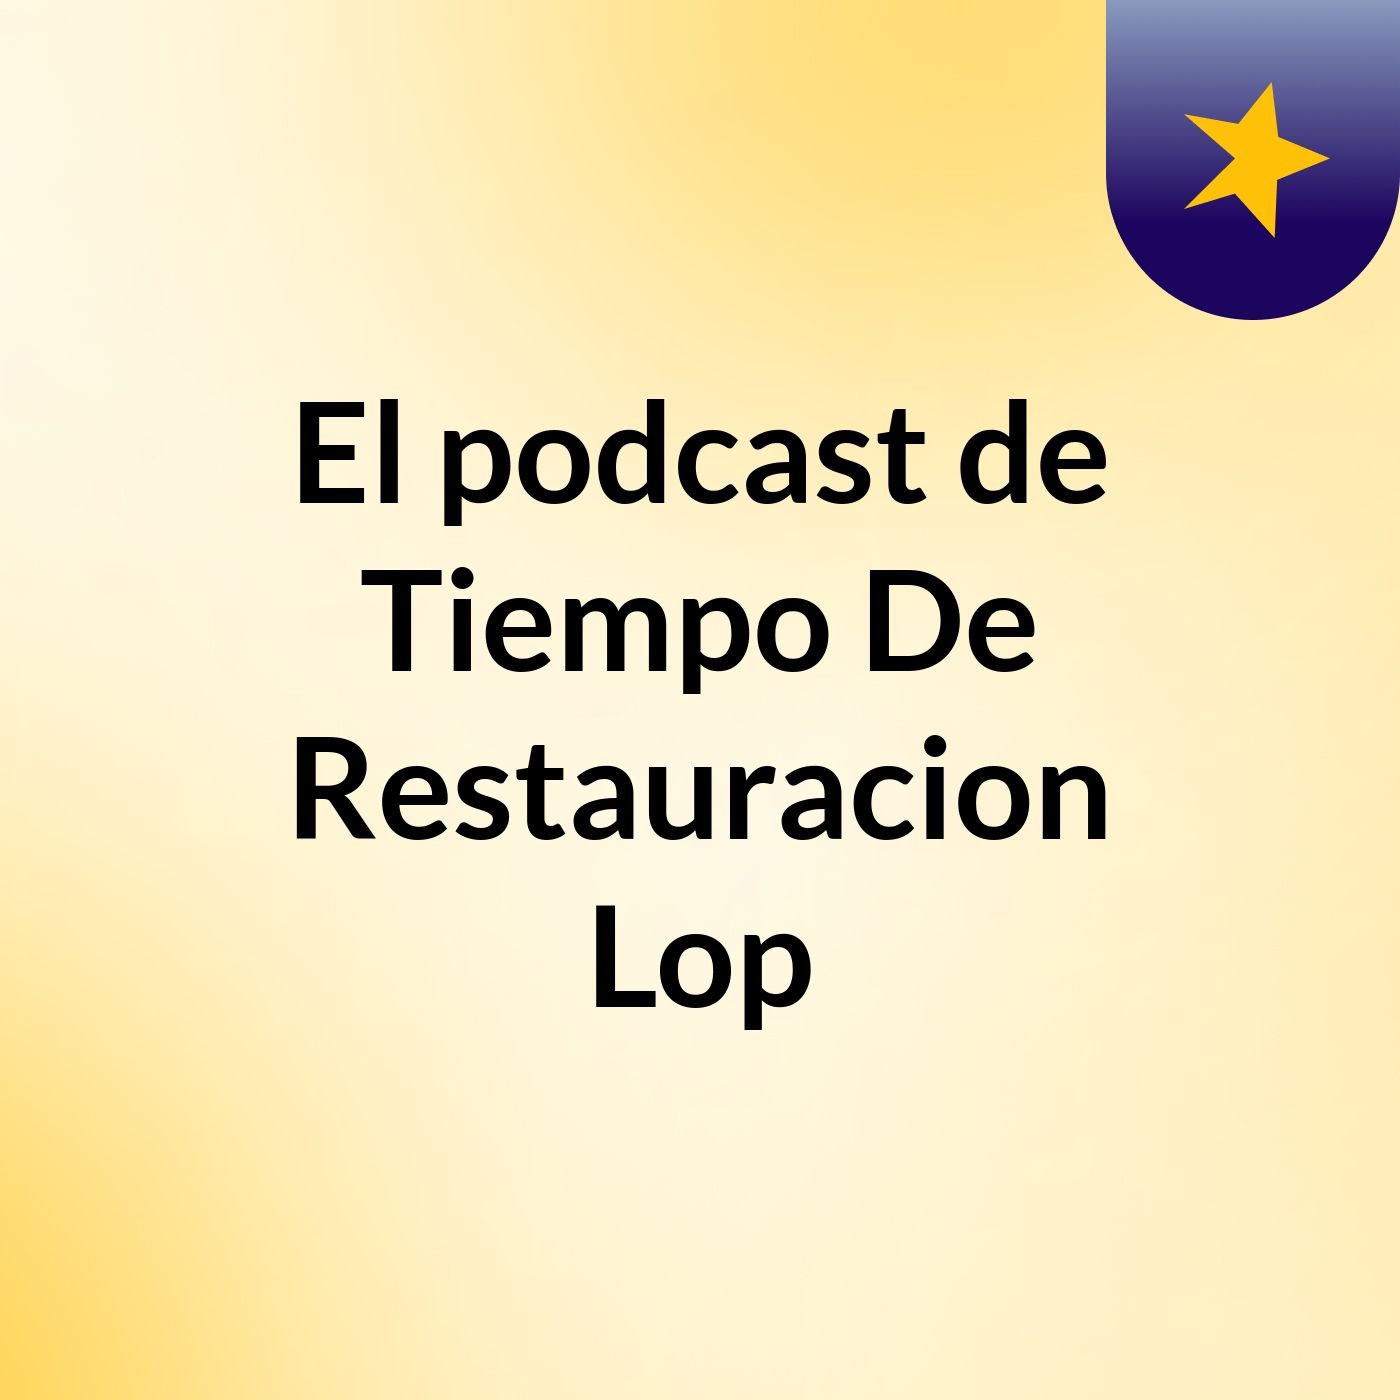 El podcast de Tiempo De Restauracion Lop